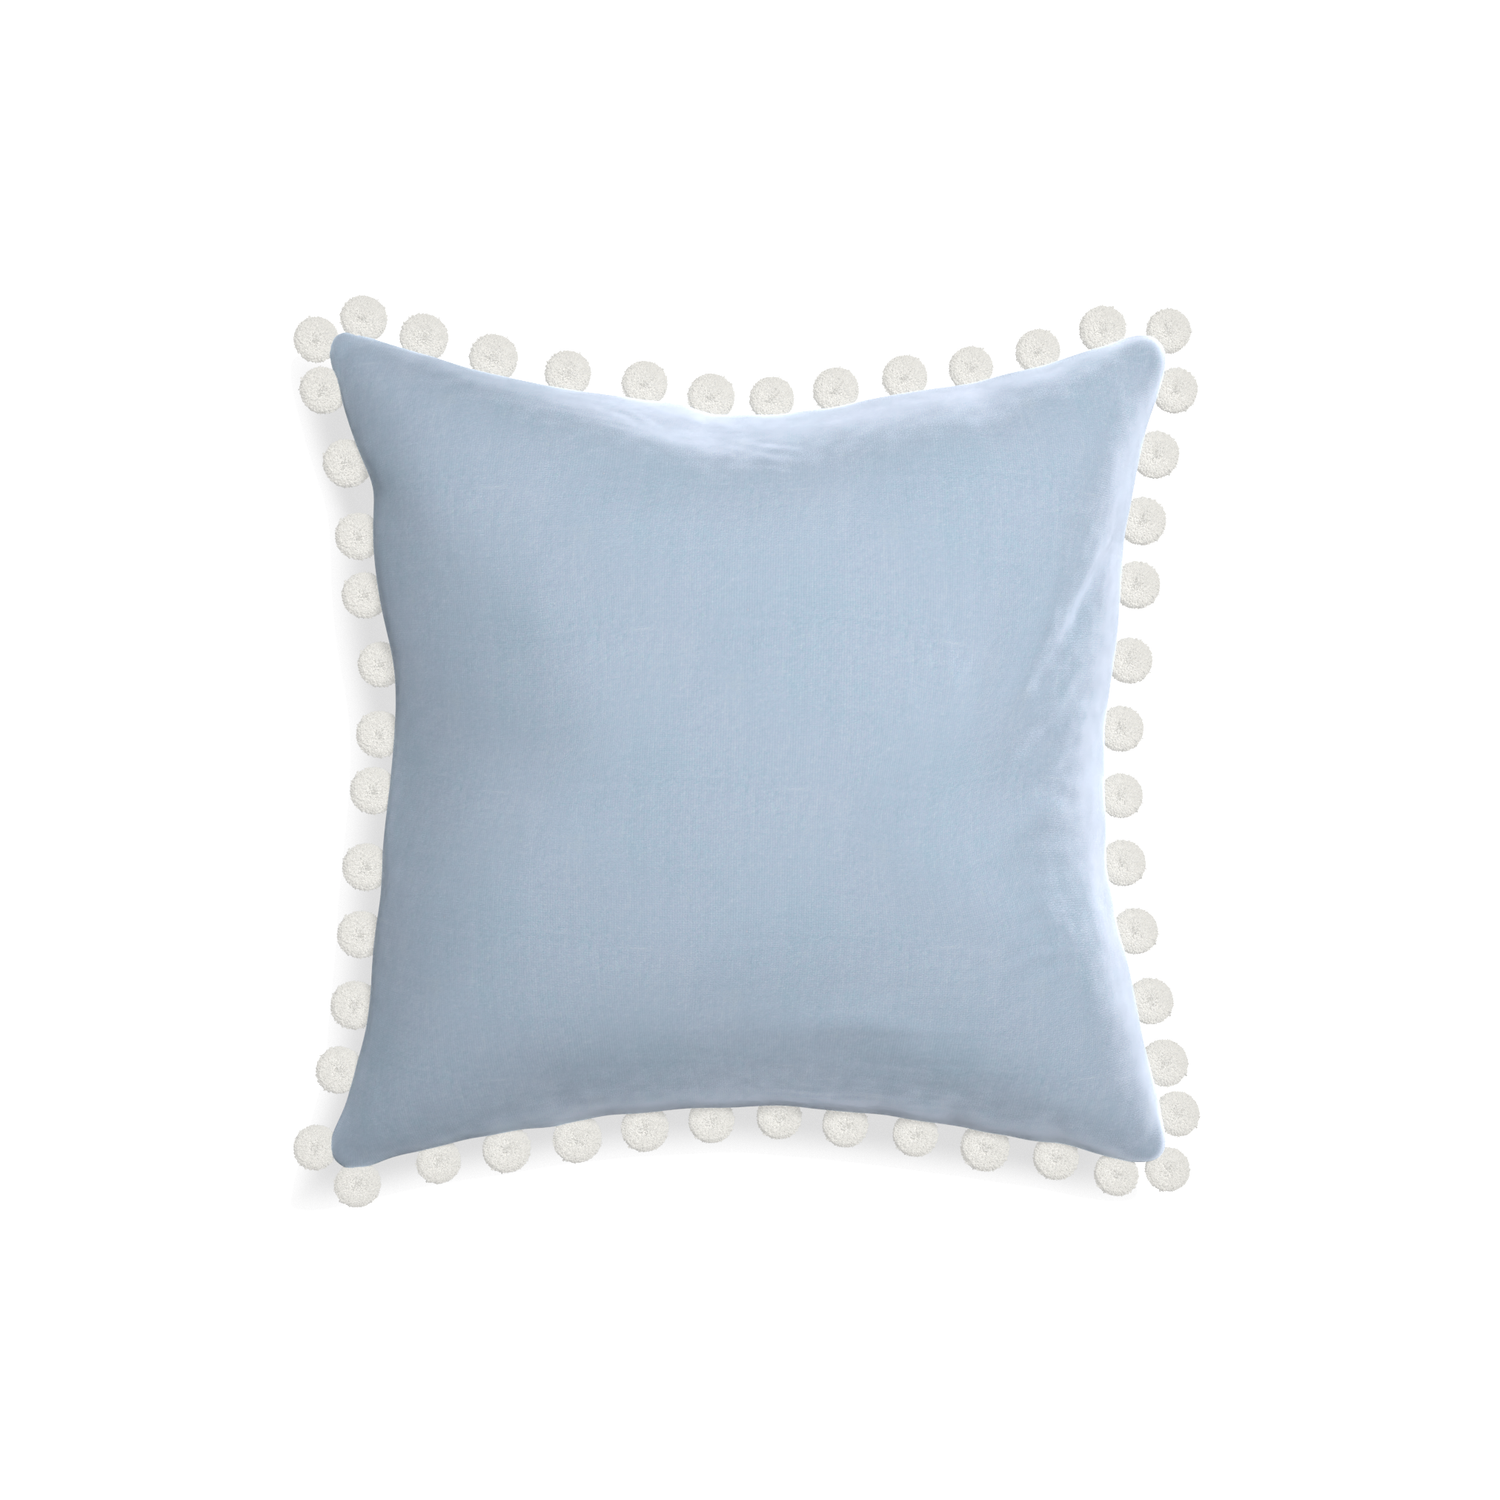 square light blue velvet pillow with white pom pom 